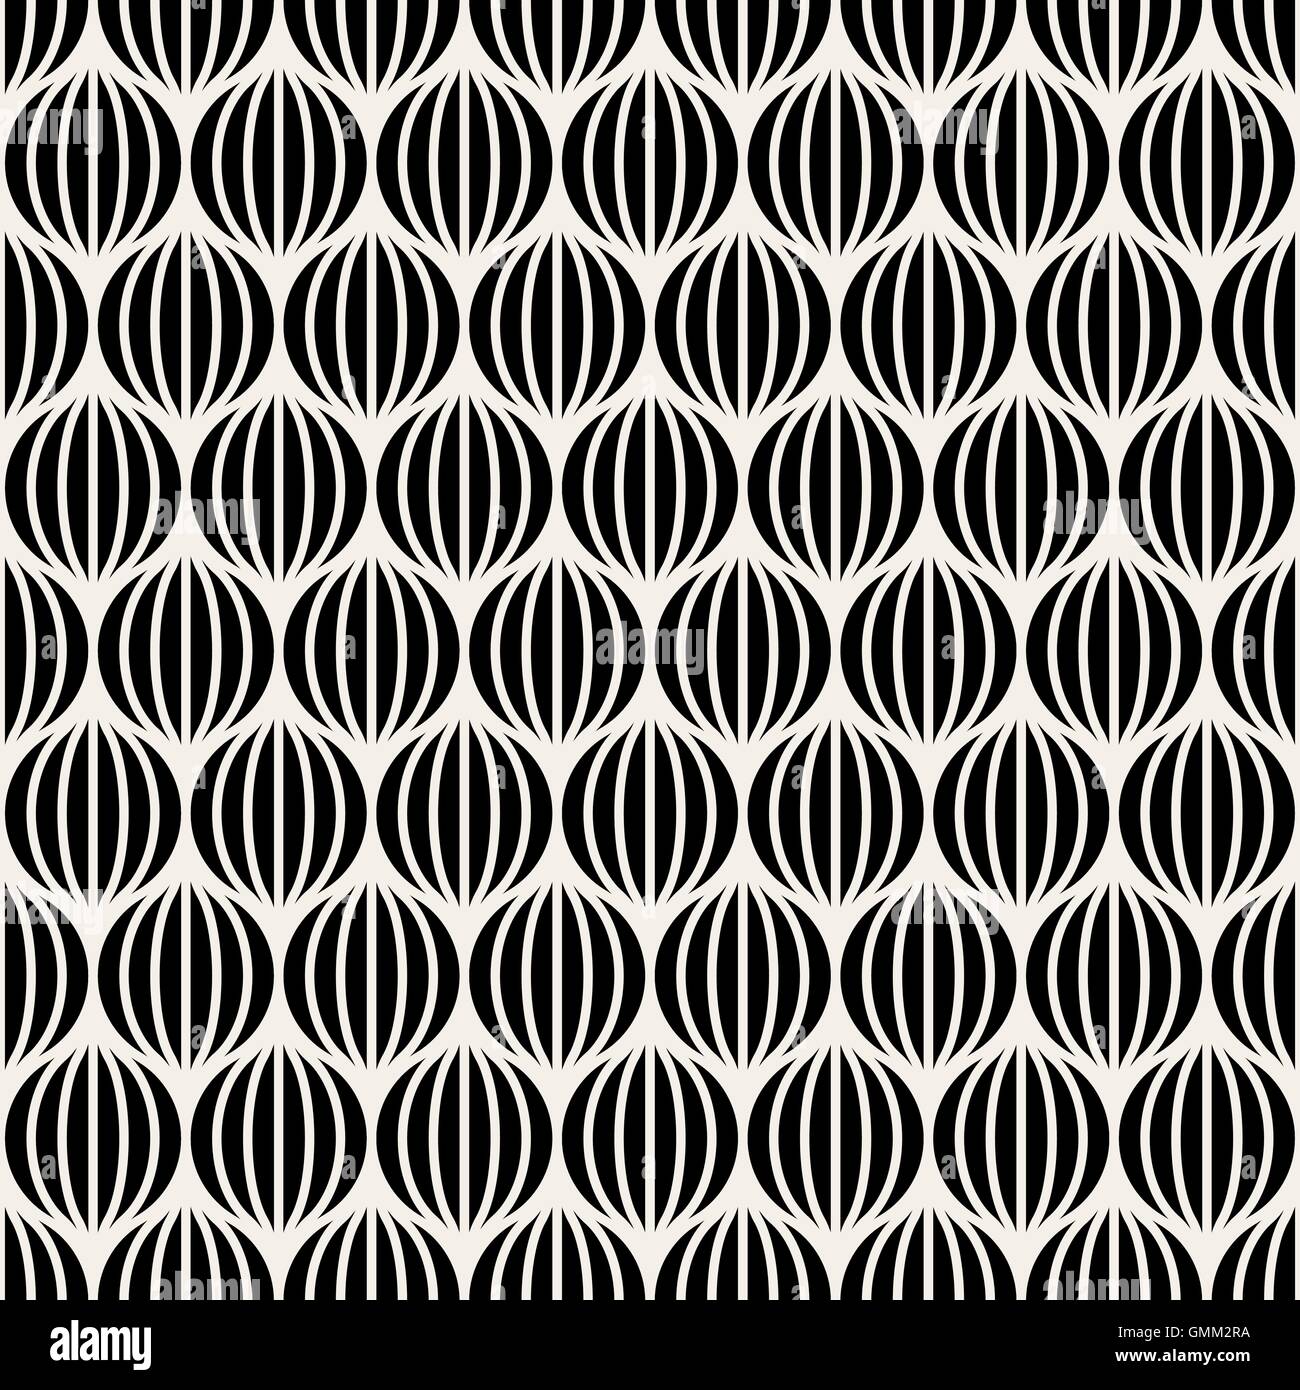 Seamless Vector Black & White Lines sphères rondes Motif illusion optique Illustration de Vecteur